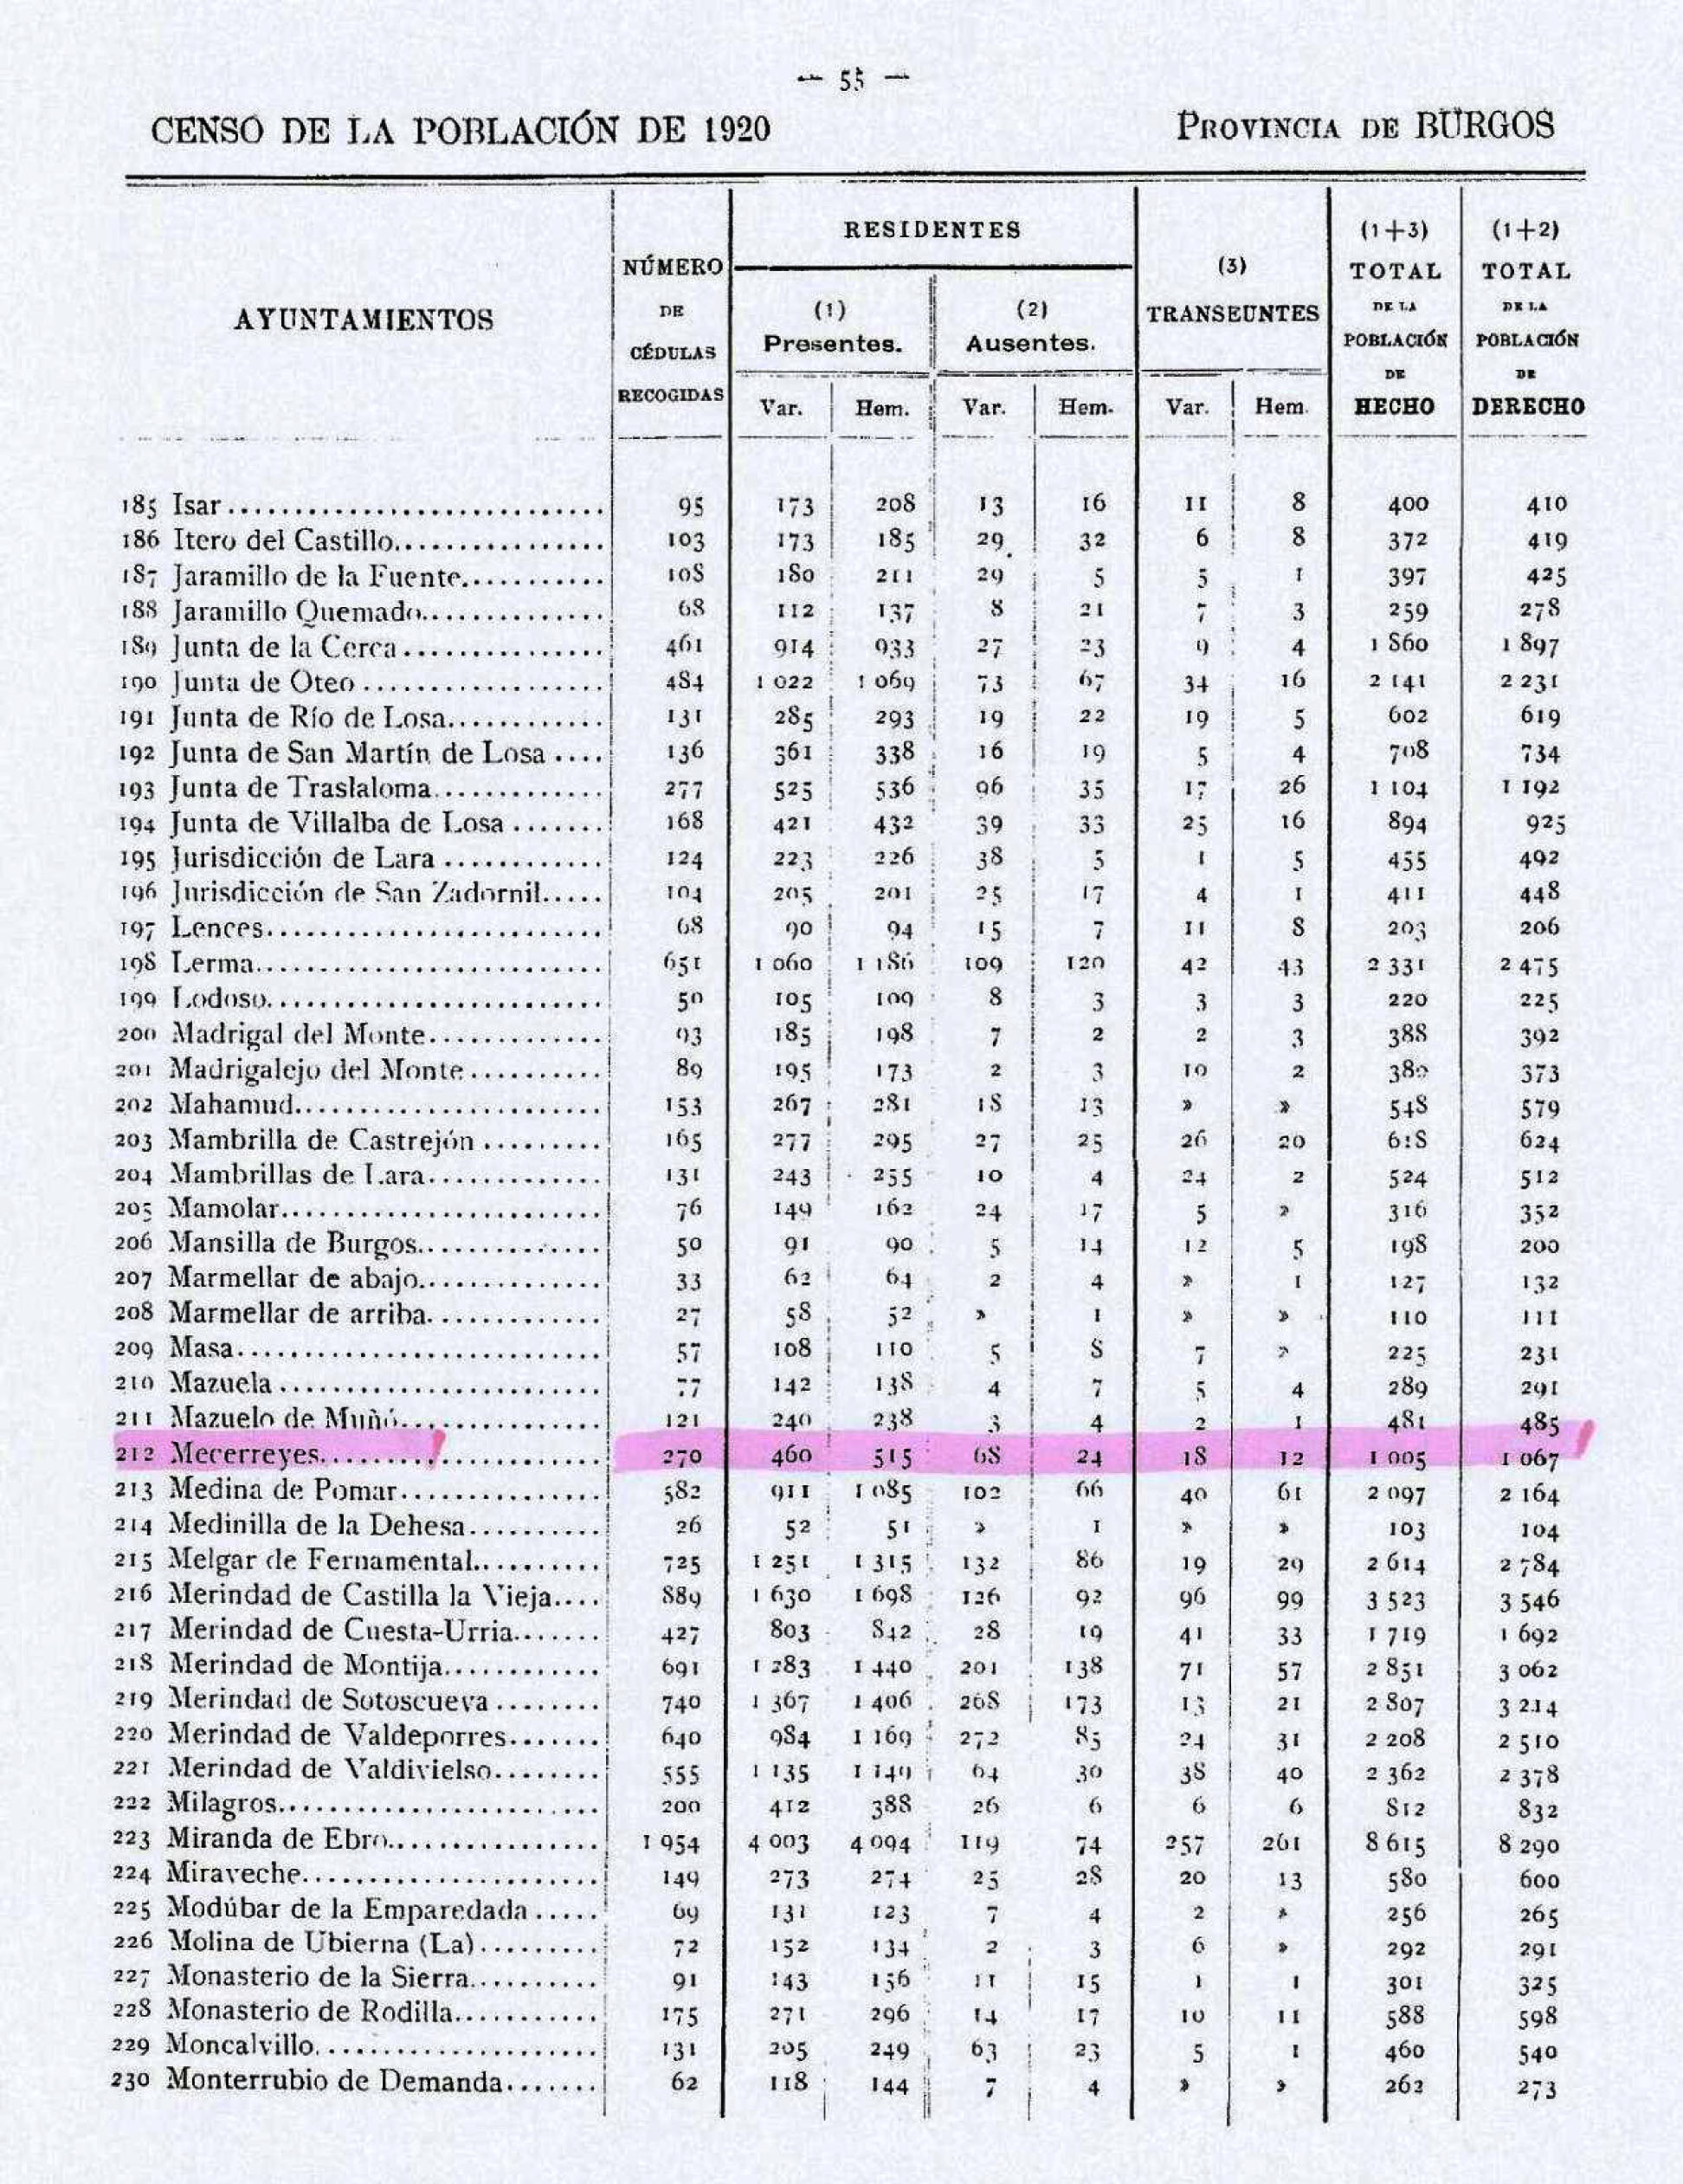 Tabla 3. Censo de la población en el año 1920 en la provincia de Burgos